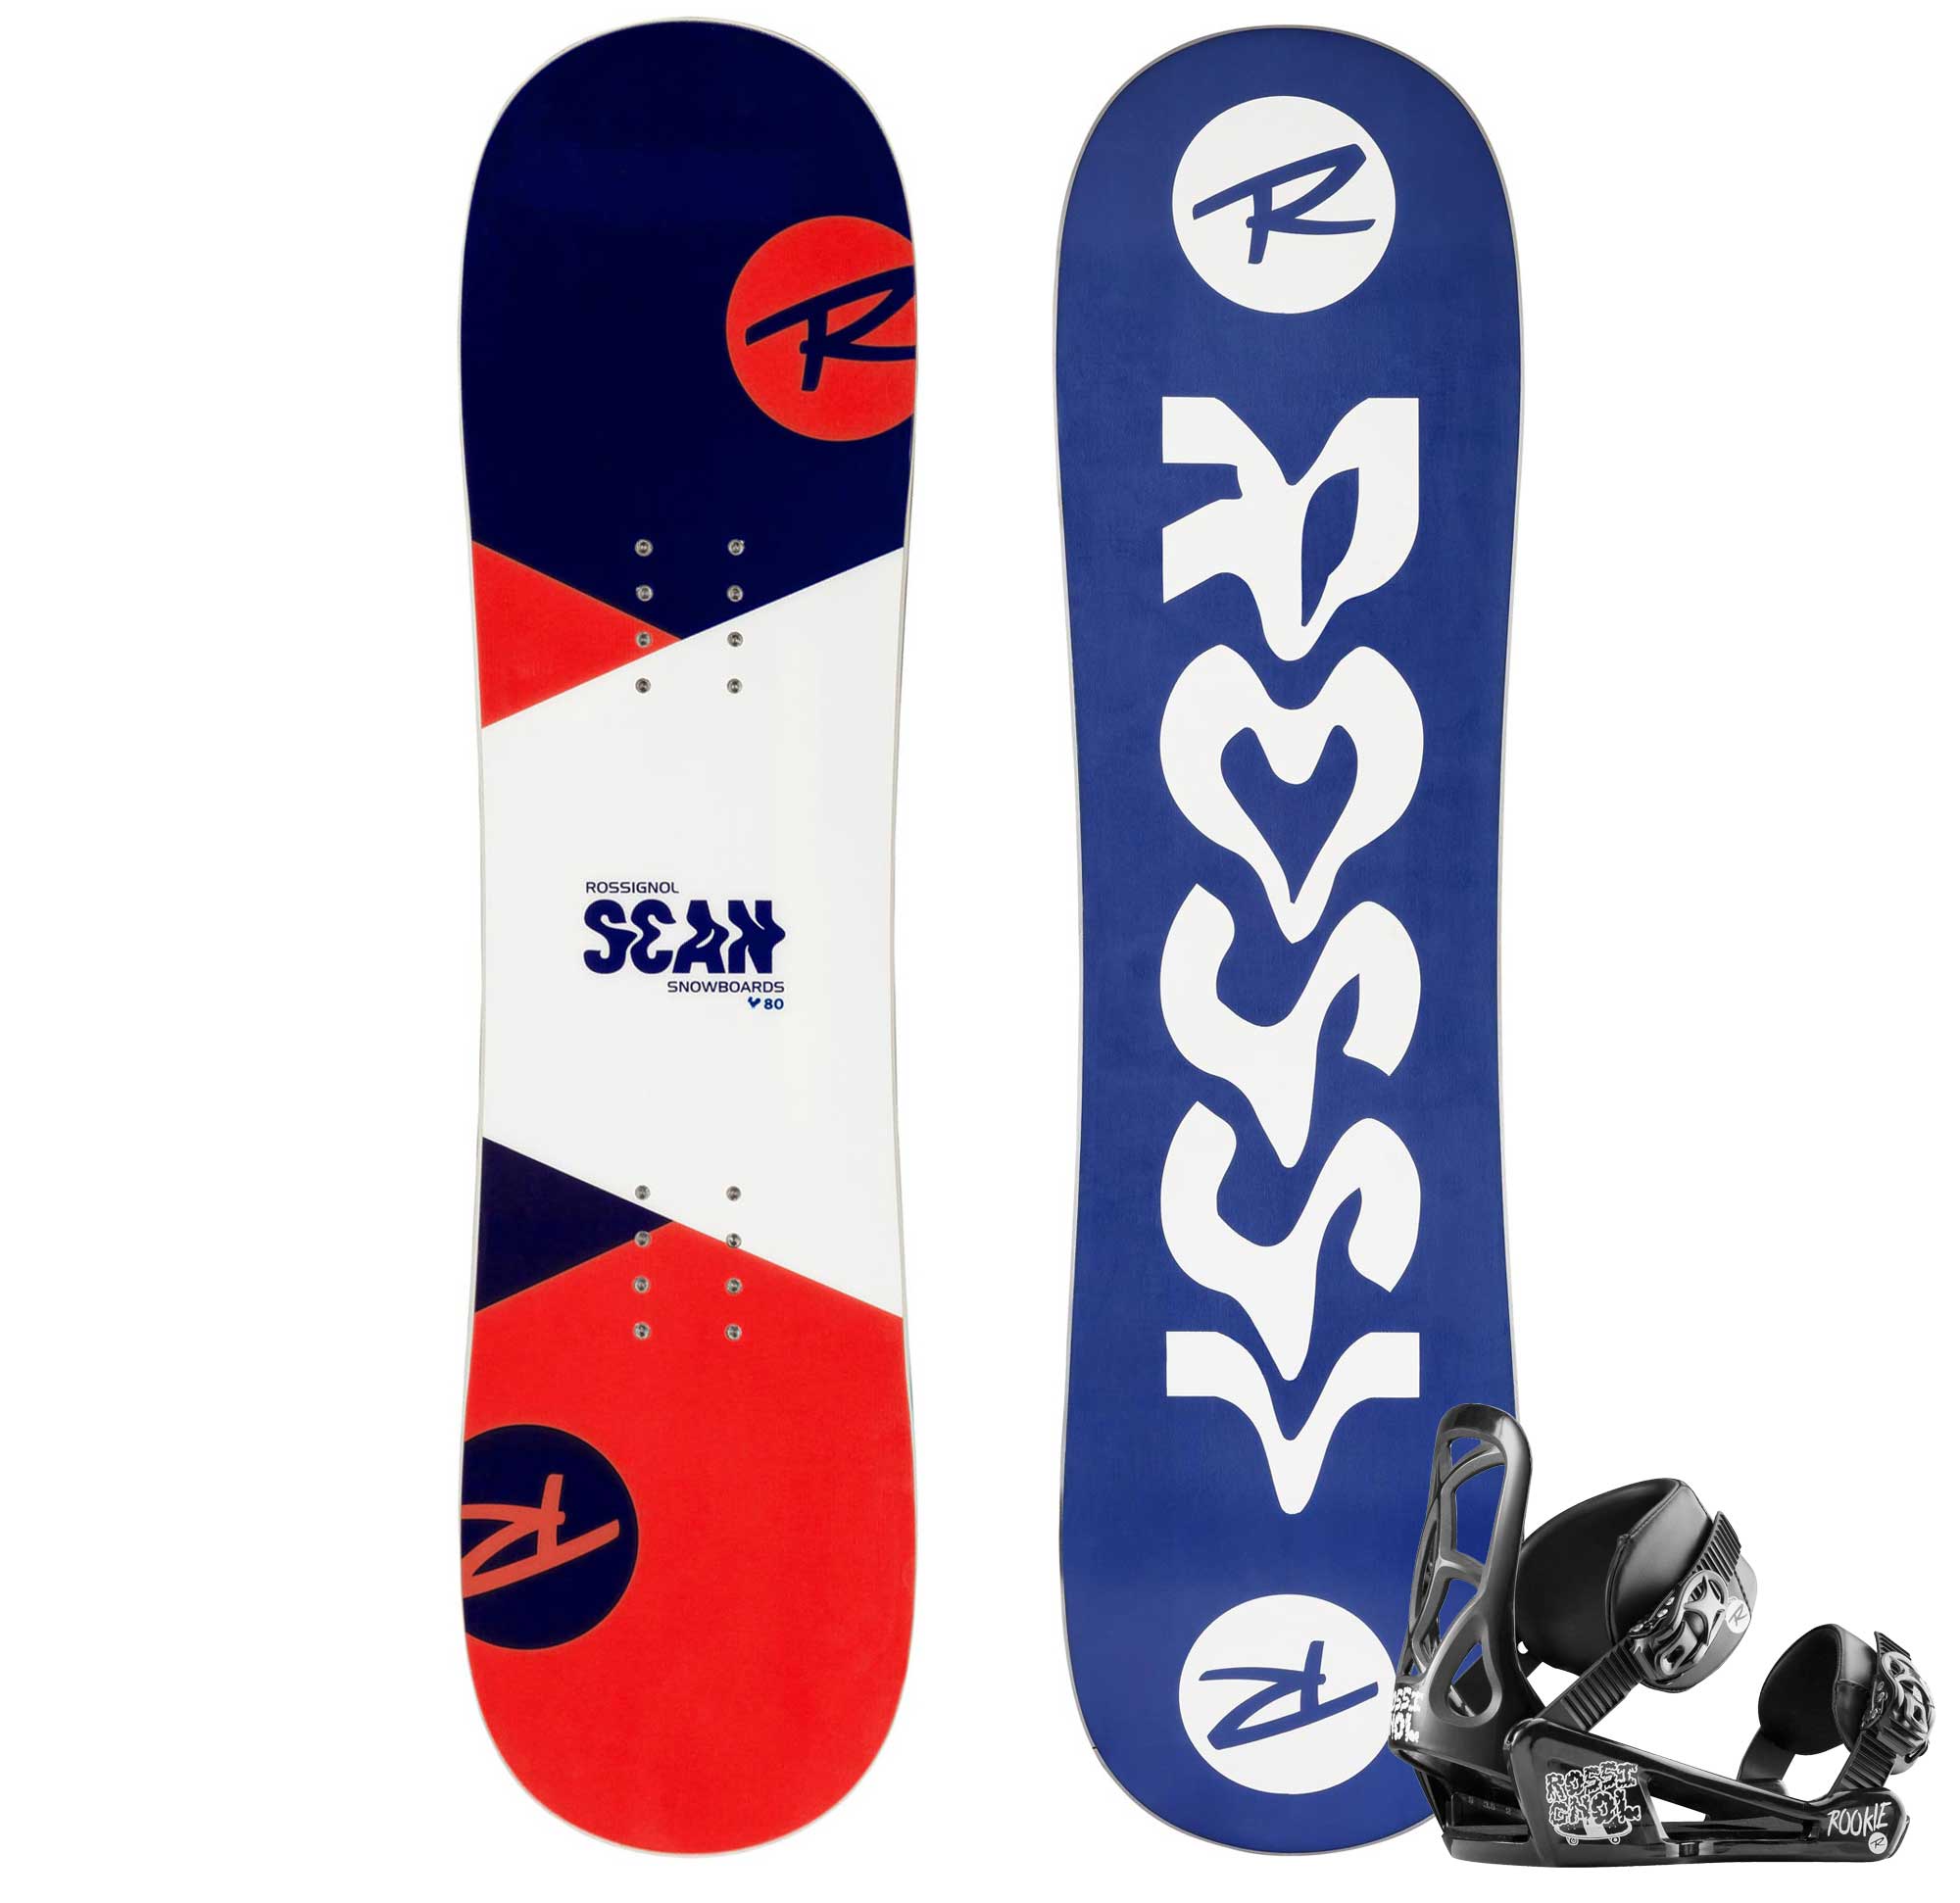 Children's snowboard set